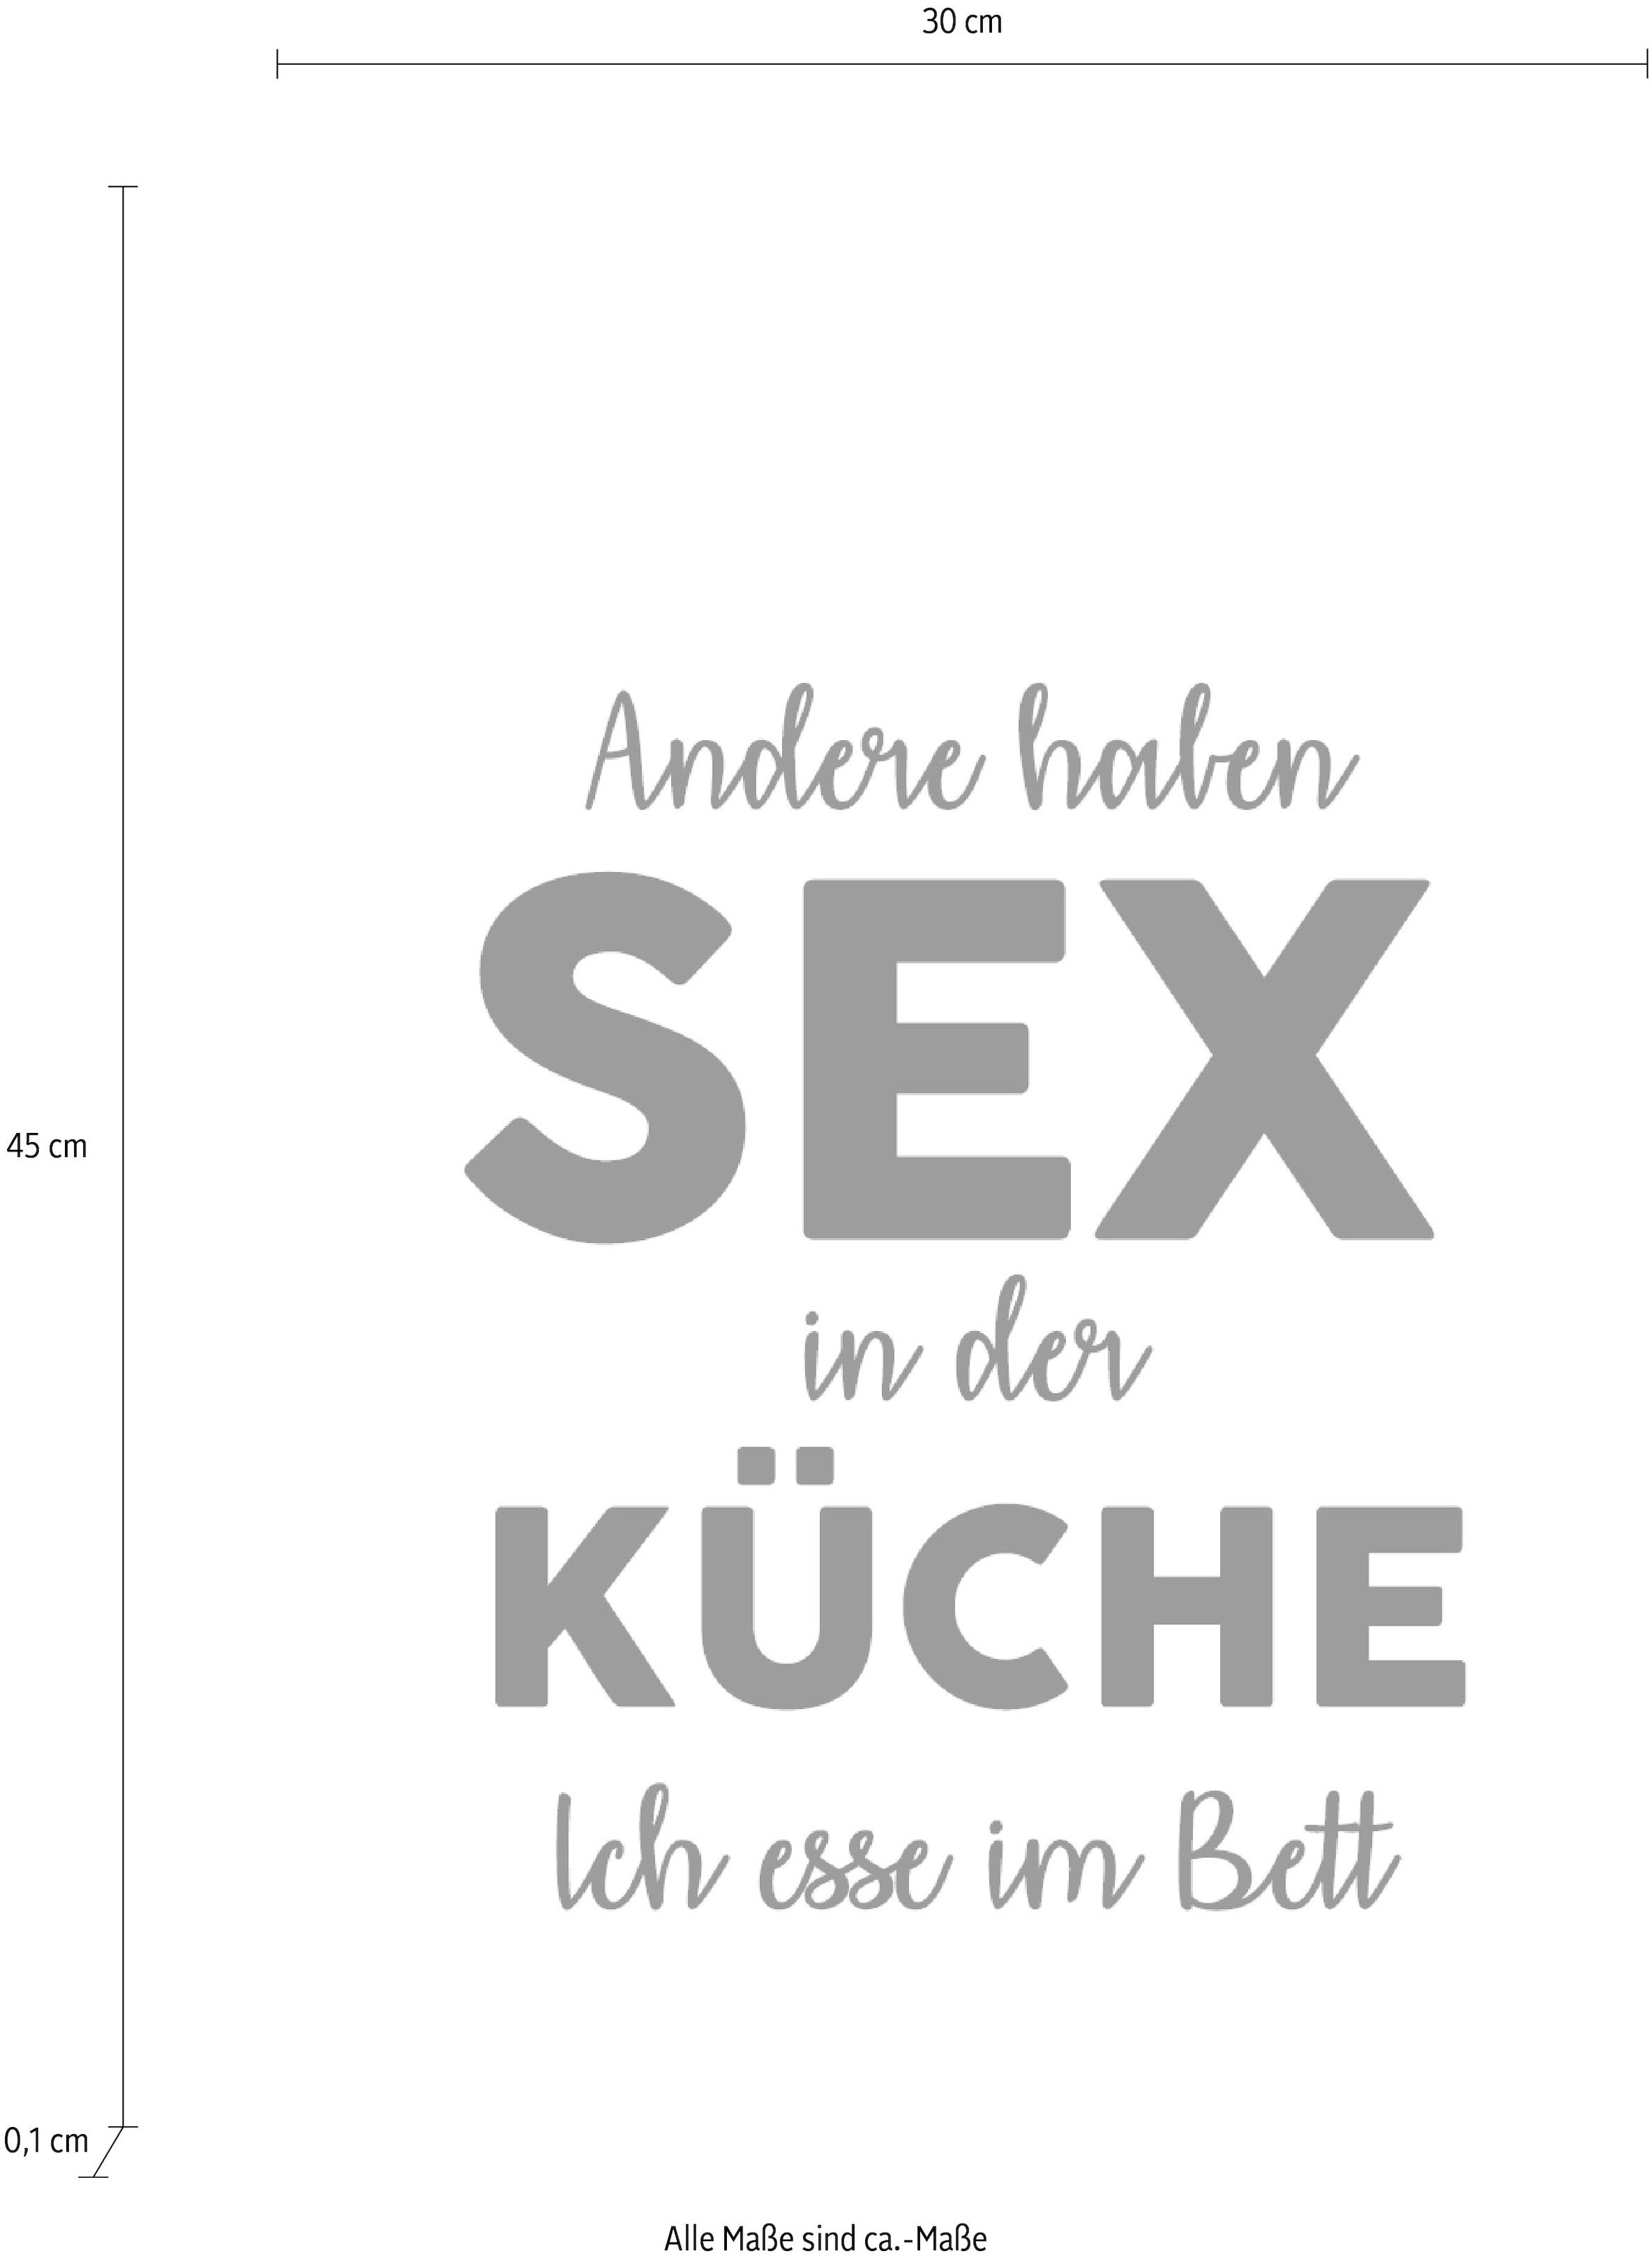 kaufen auf in Wanddekoobjekt haben auf Schriftzug Sex »Andere ...«, Stahlblech Raten der queence